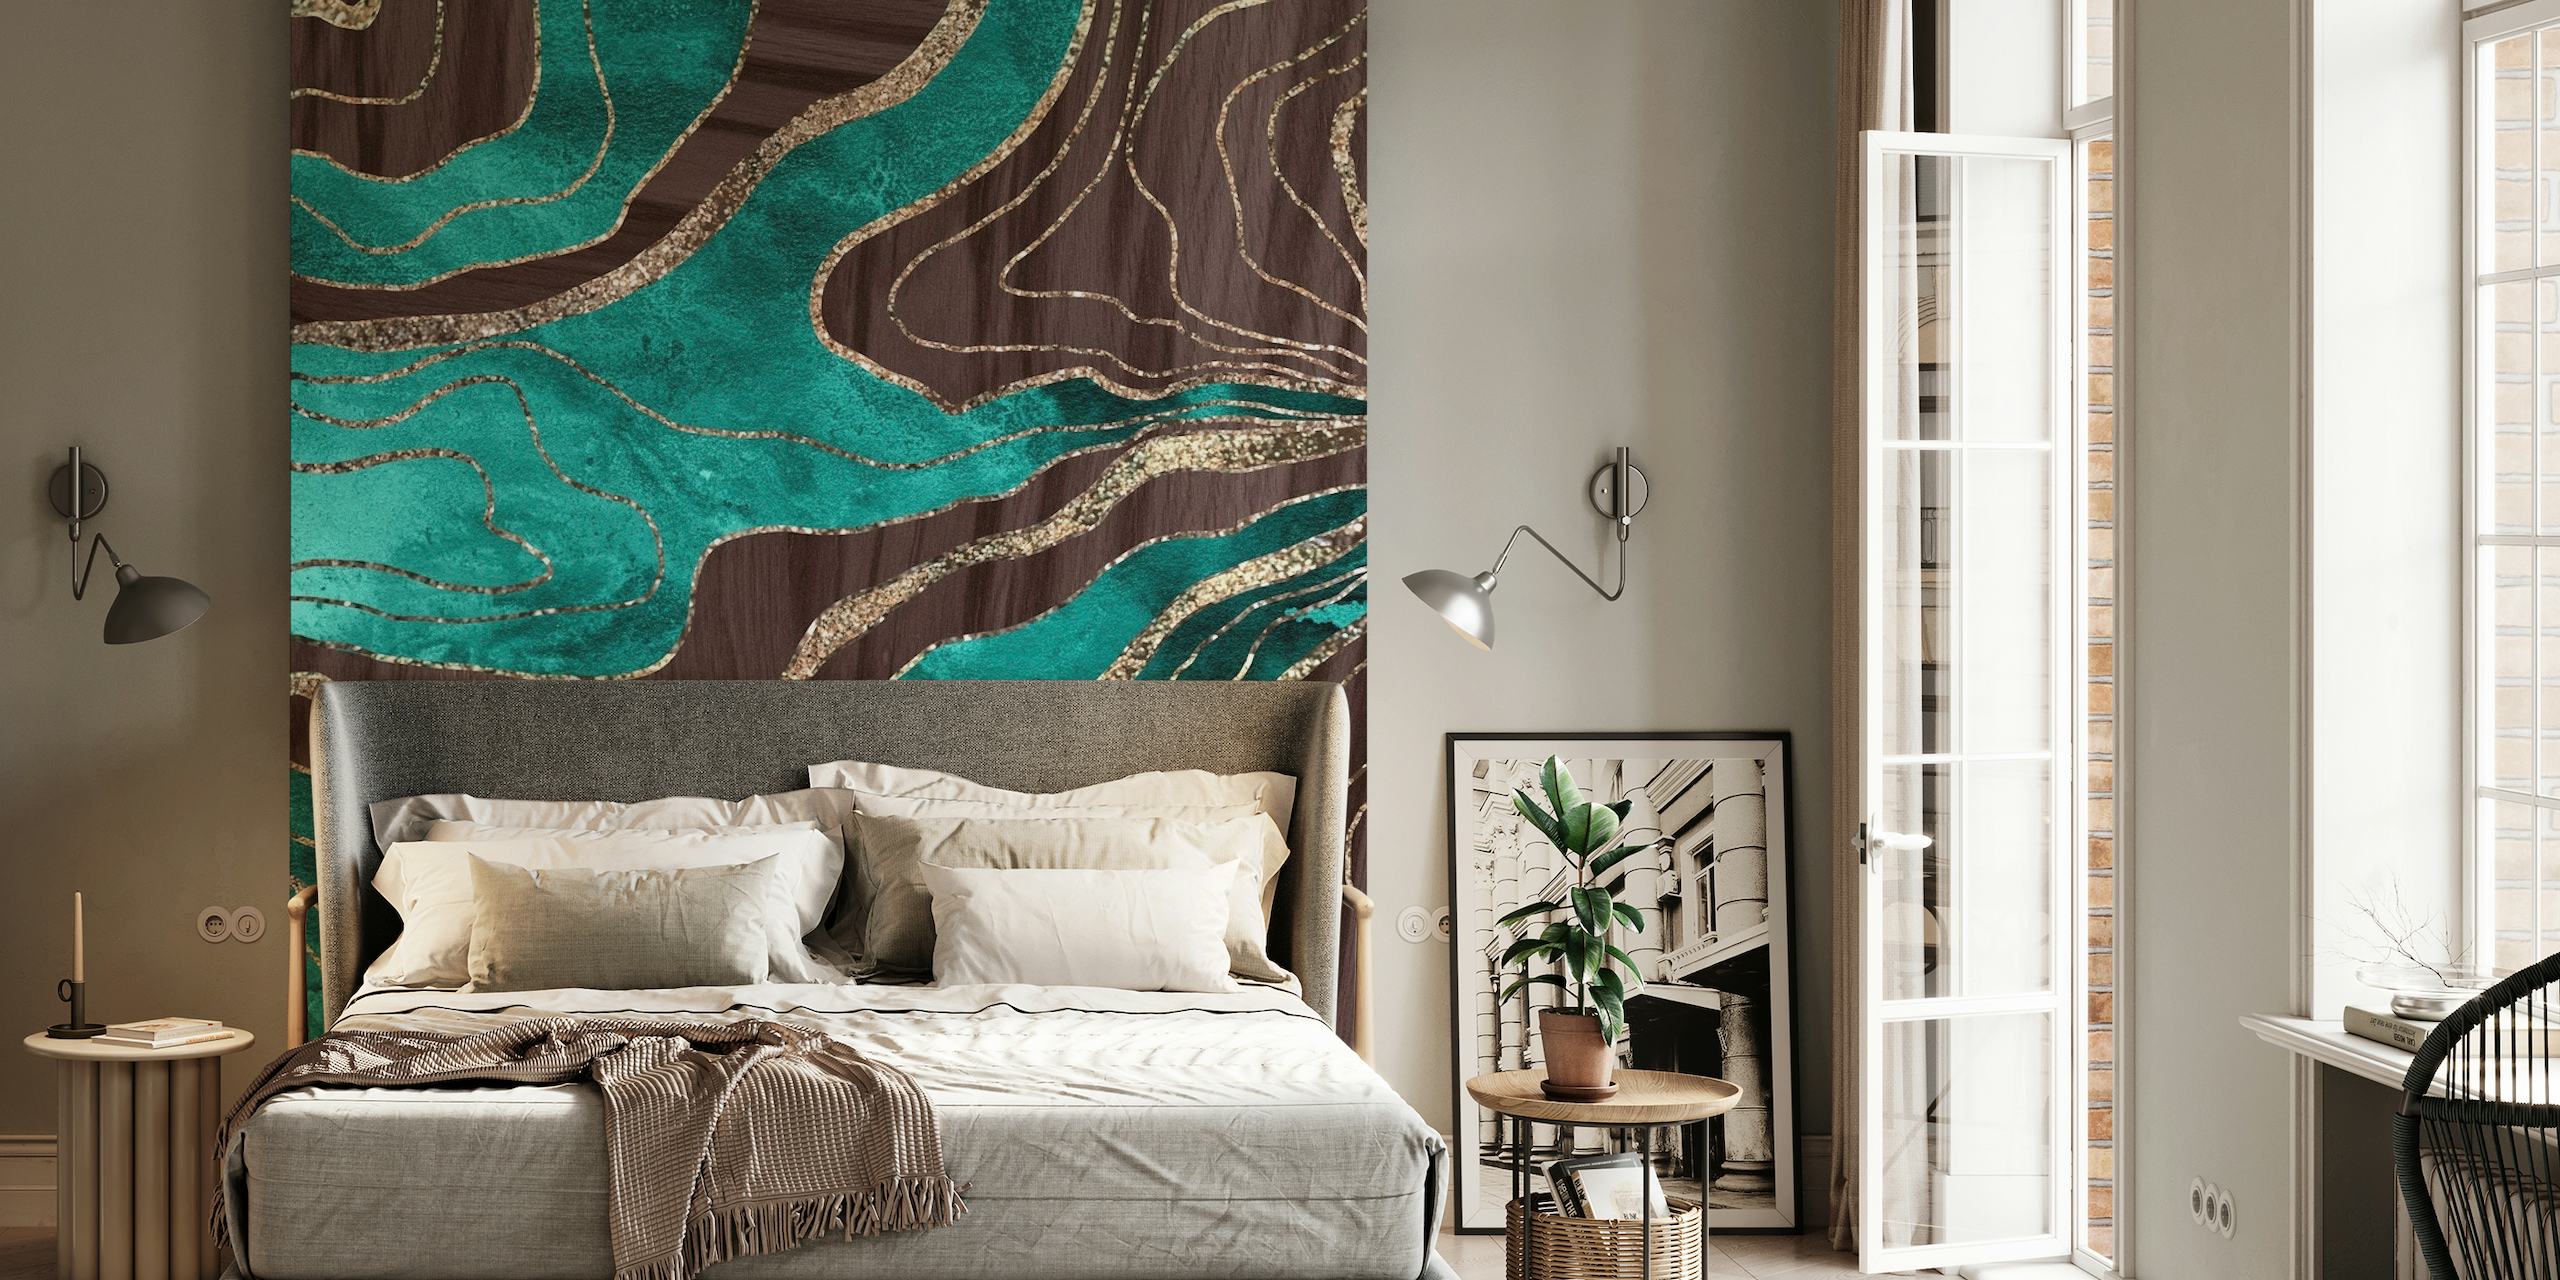 Abstract fotobehang in agaat- en houtdesign met glitterdetails